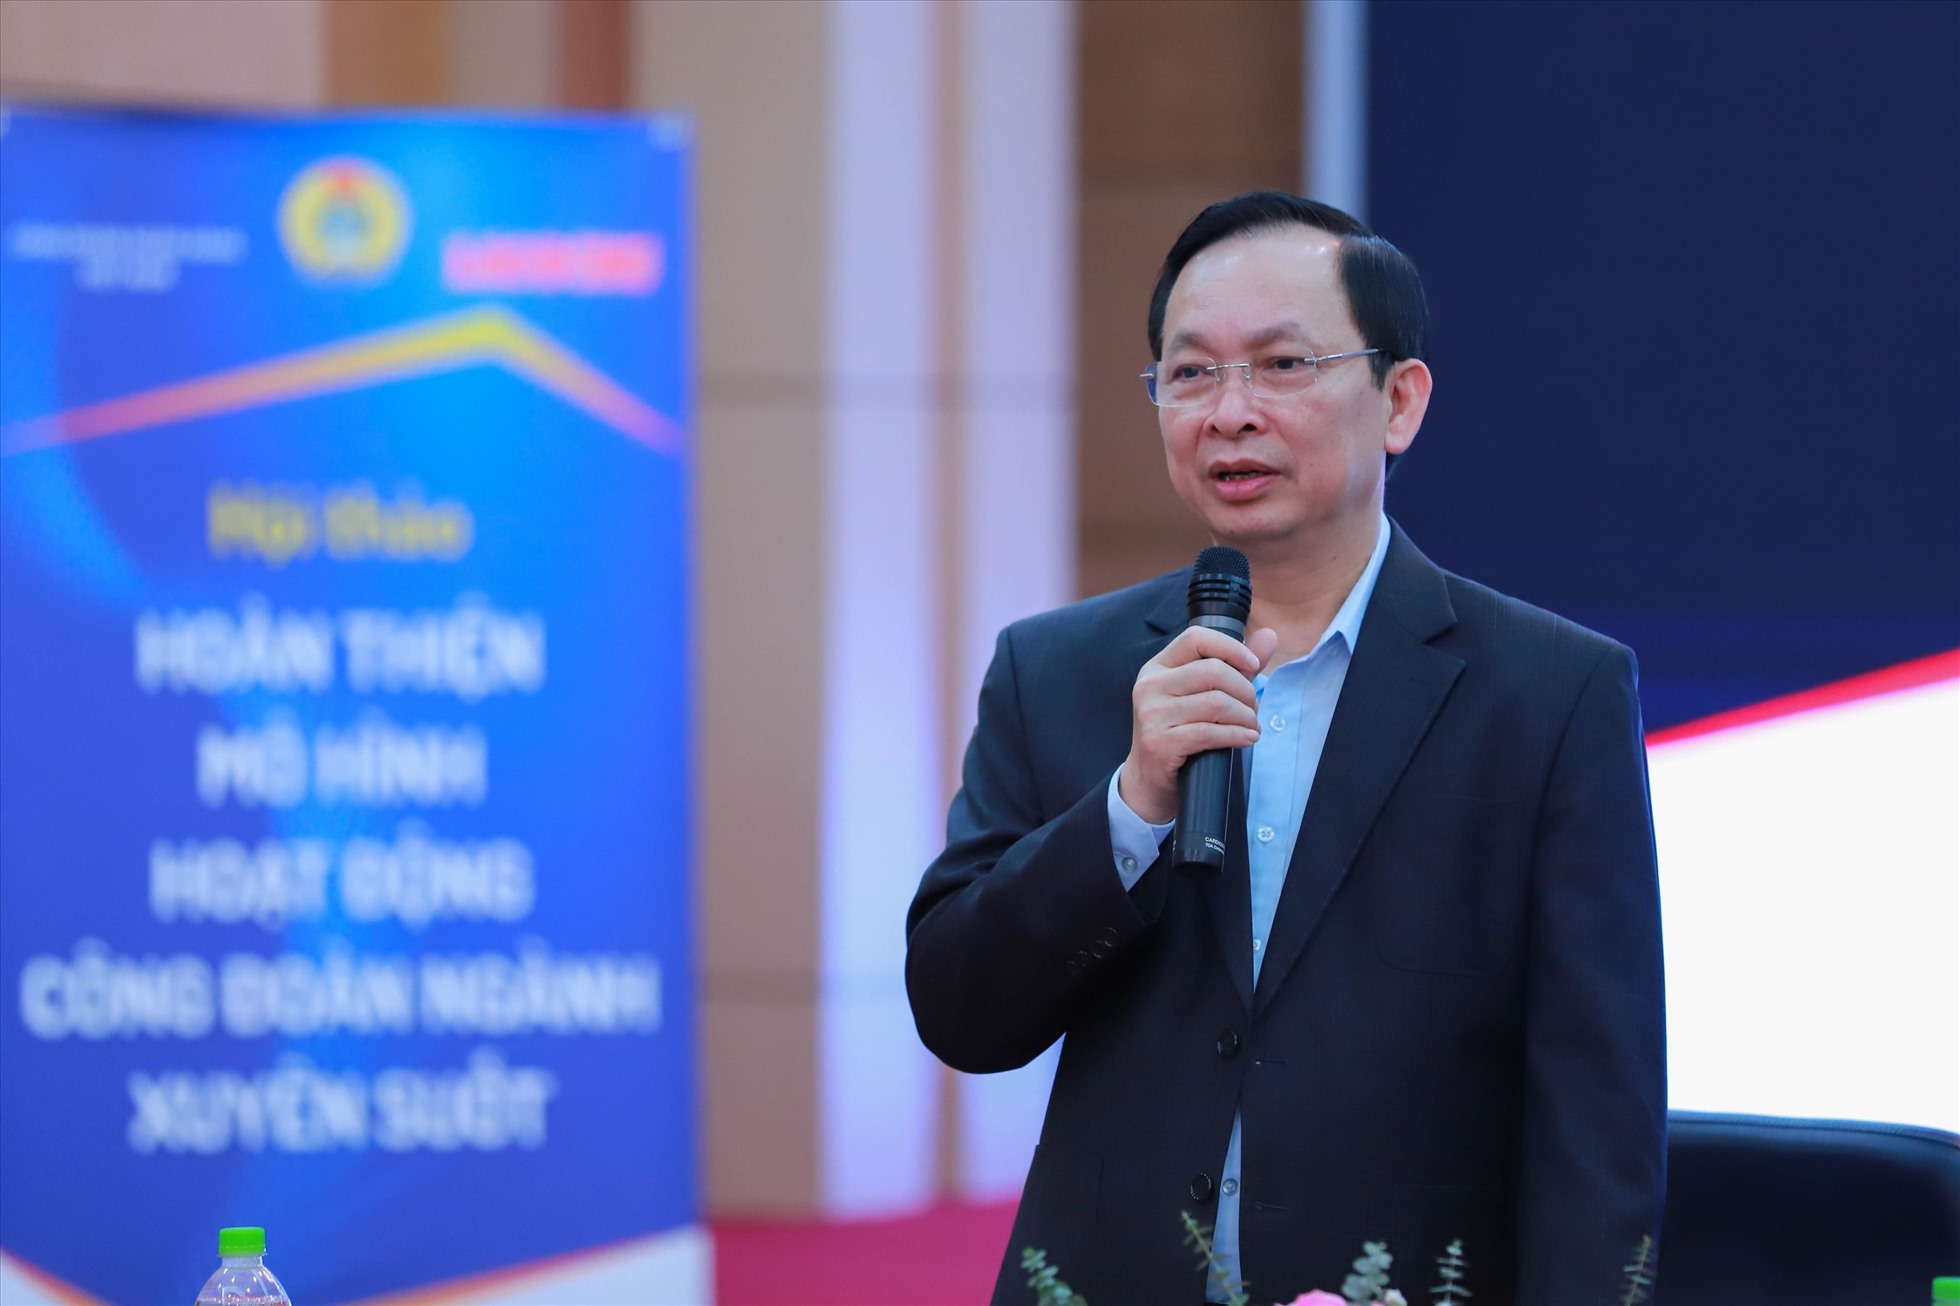 Ông Đào Minh Tú - Phó Thống đốc Thường trực Ngân hàng Nhà nước, Chủ tịch Công đoàn Ngân hàng Việt Nam phát biểu khai mạc hội thảo.